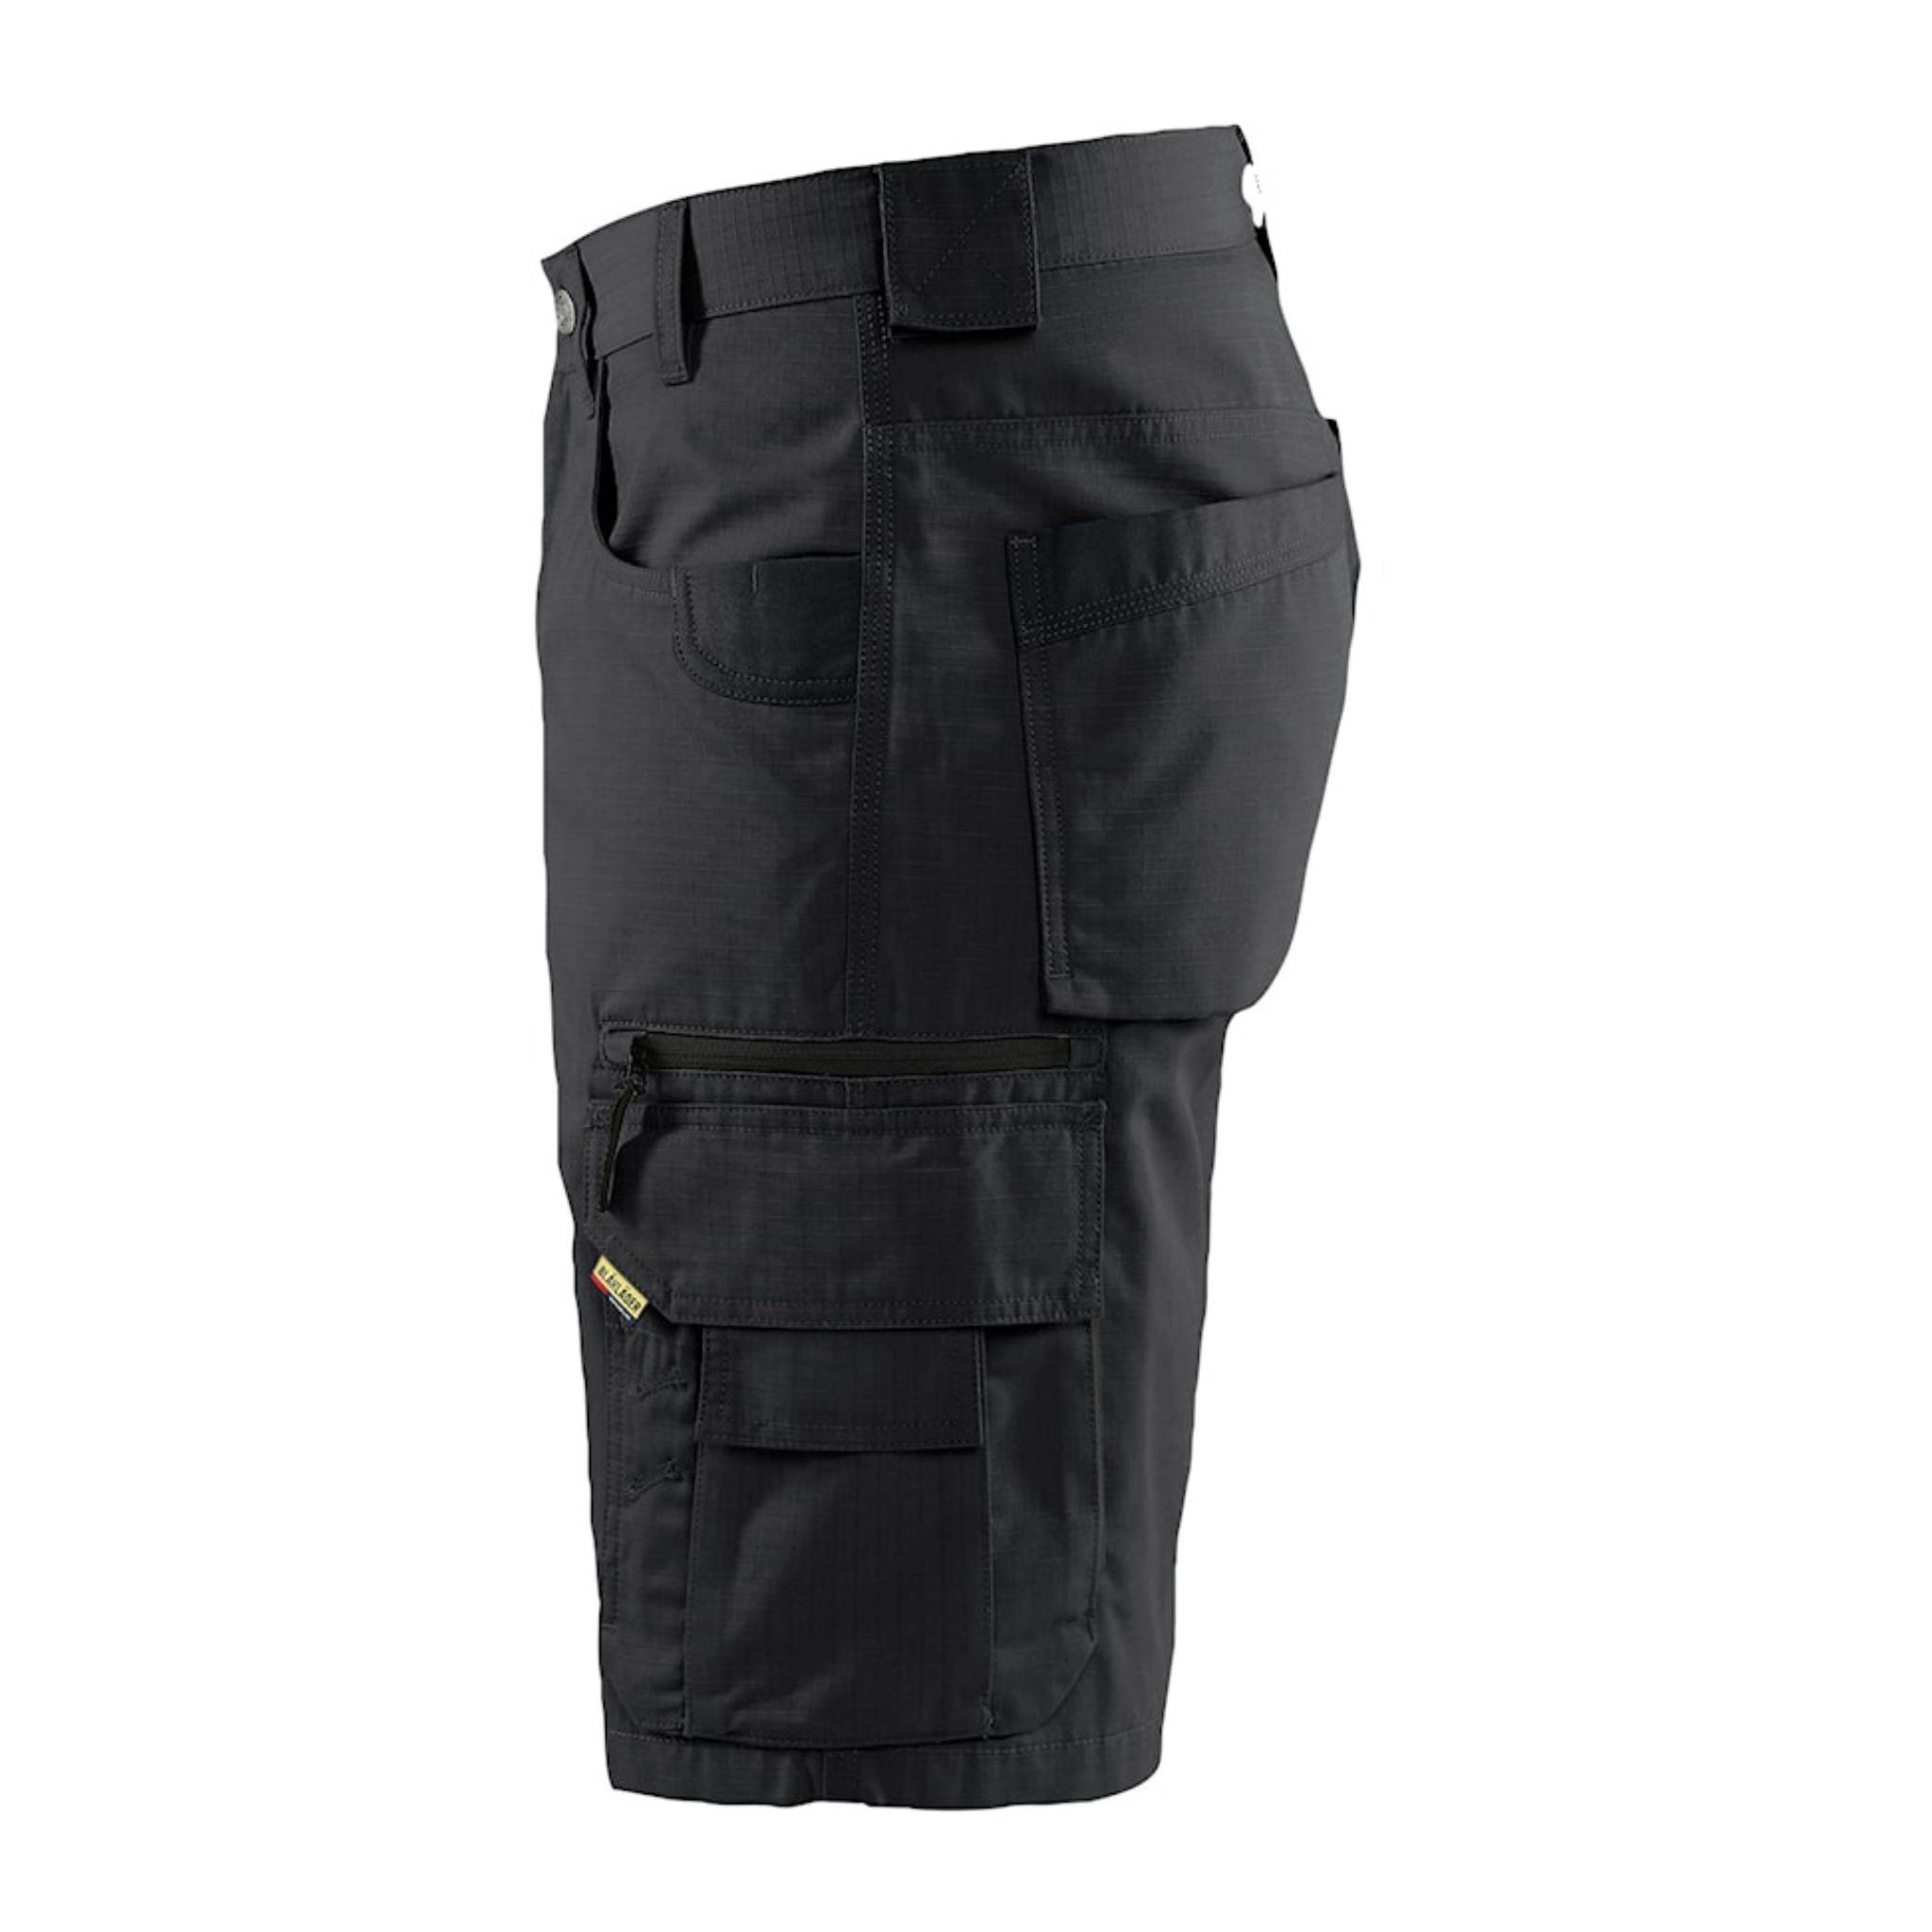 Women's black ripstop shorts leg pocket view